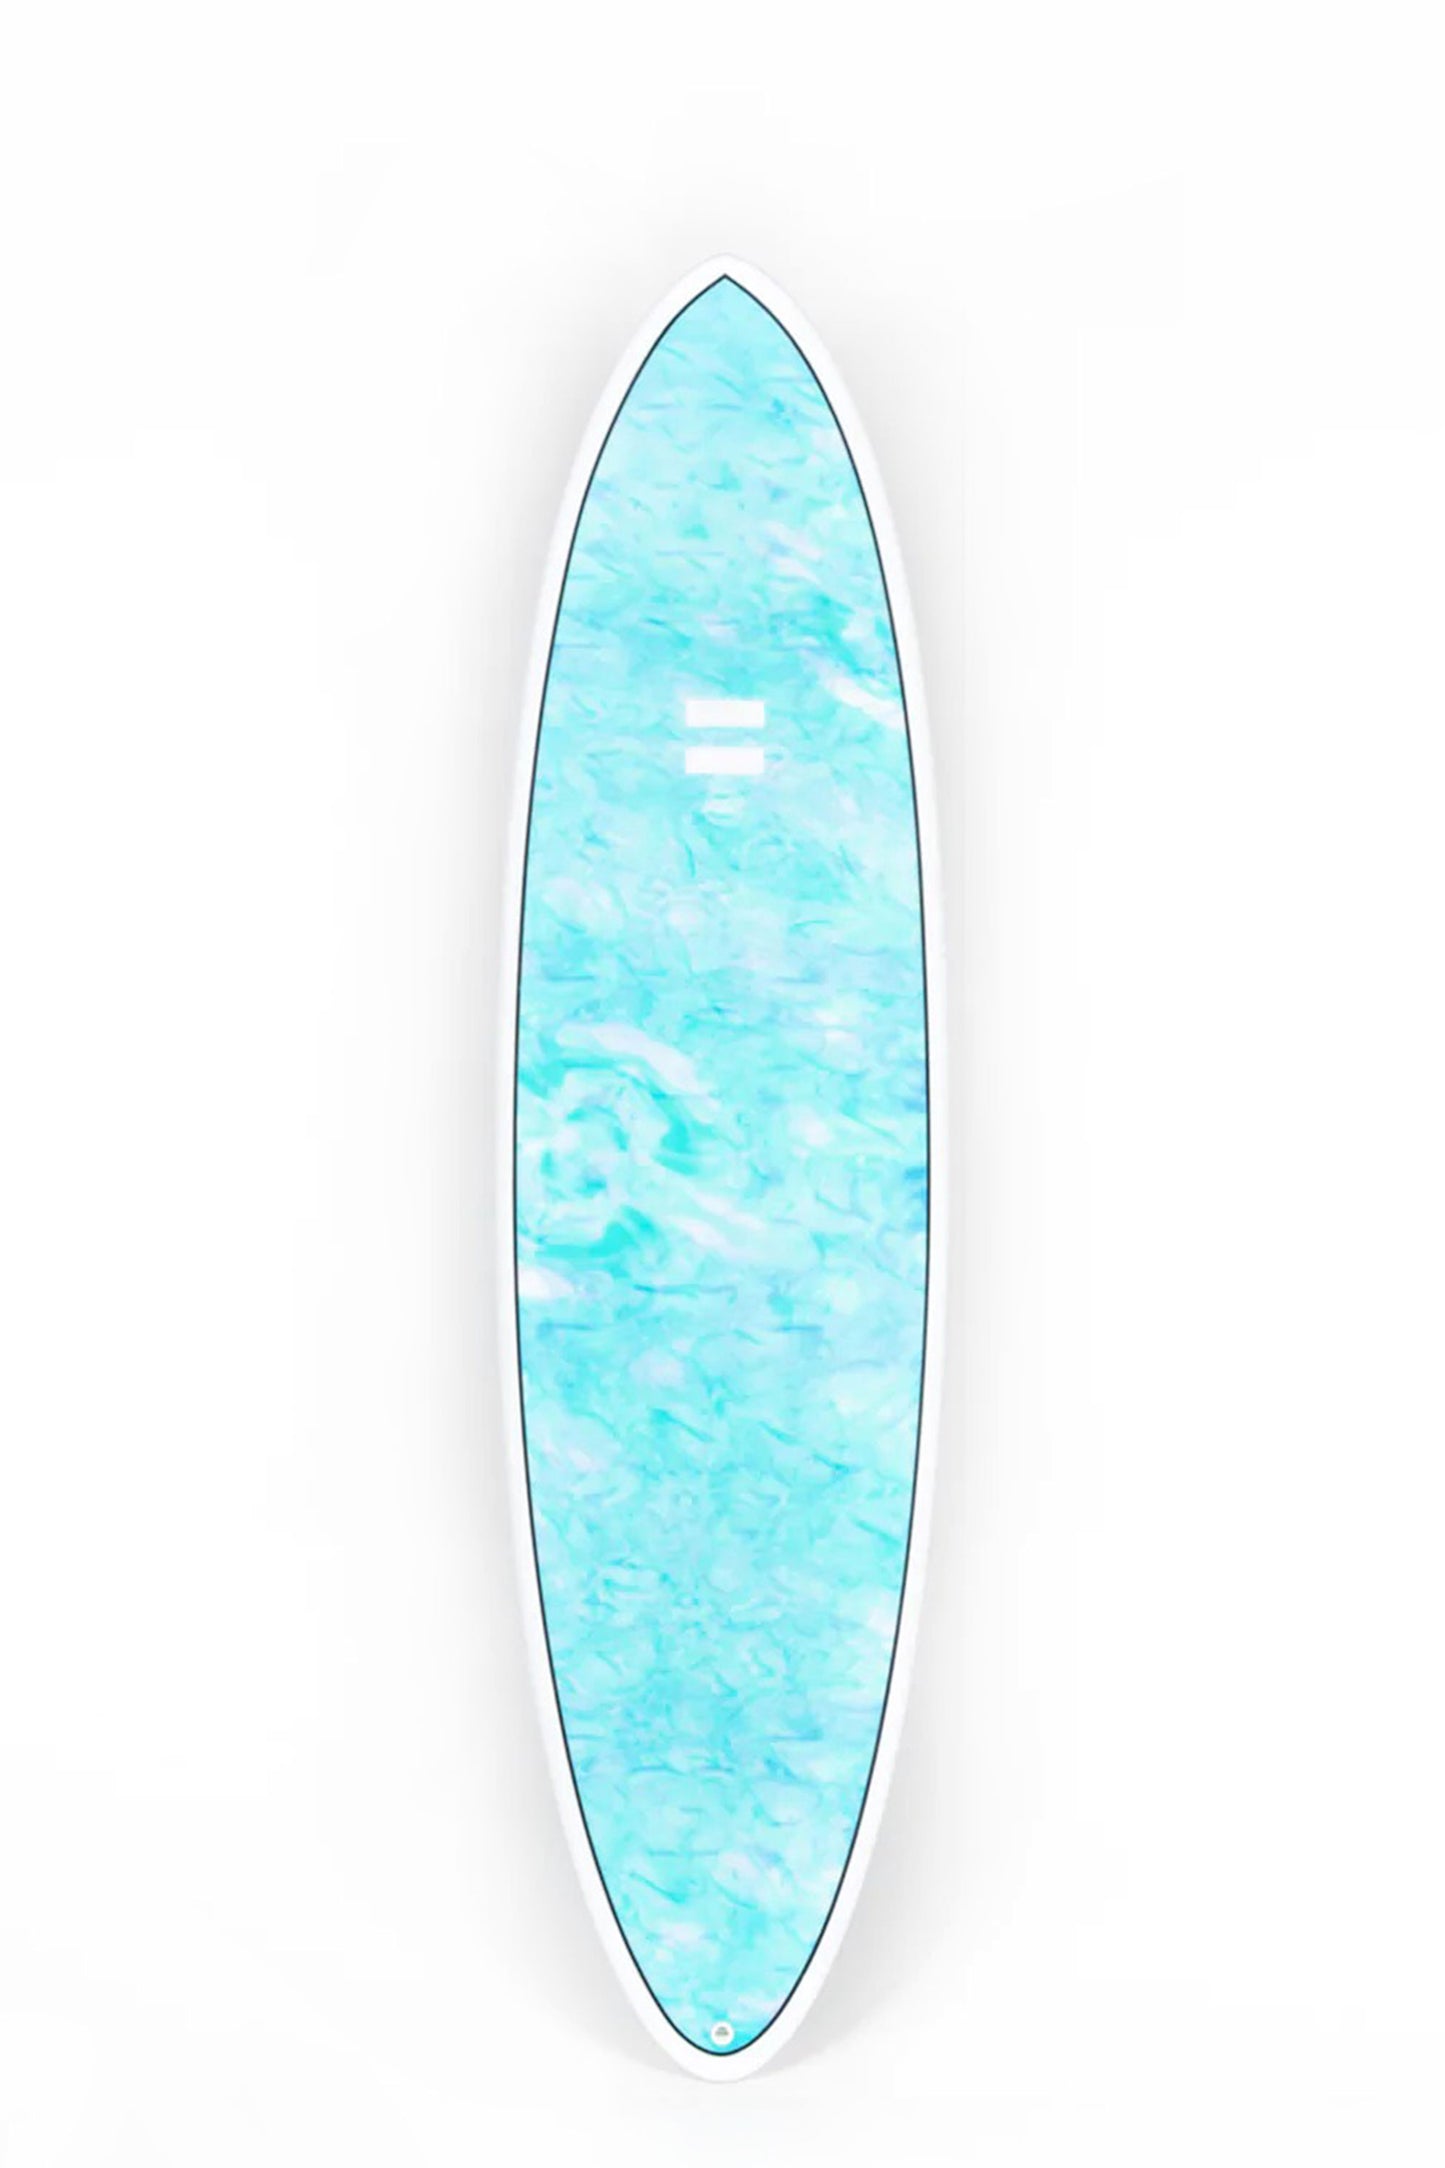 Pukas Surf Shop - Indio Endurance - THE EGG Swirl Effect Blue Mint - 7´10" x 23 1/4 x 3 - 64L